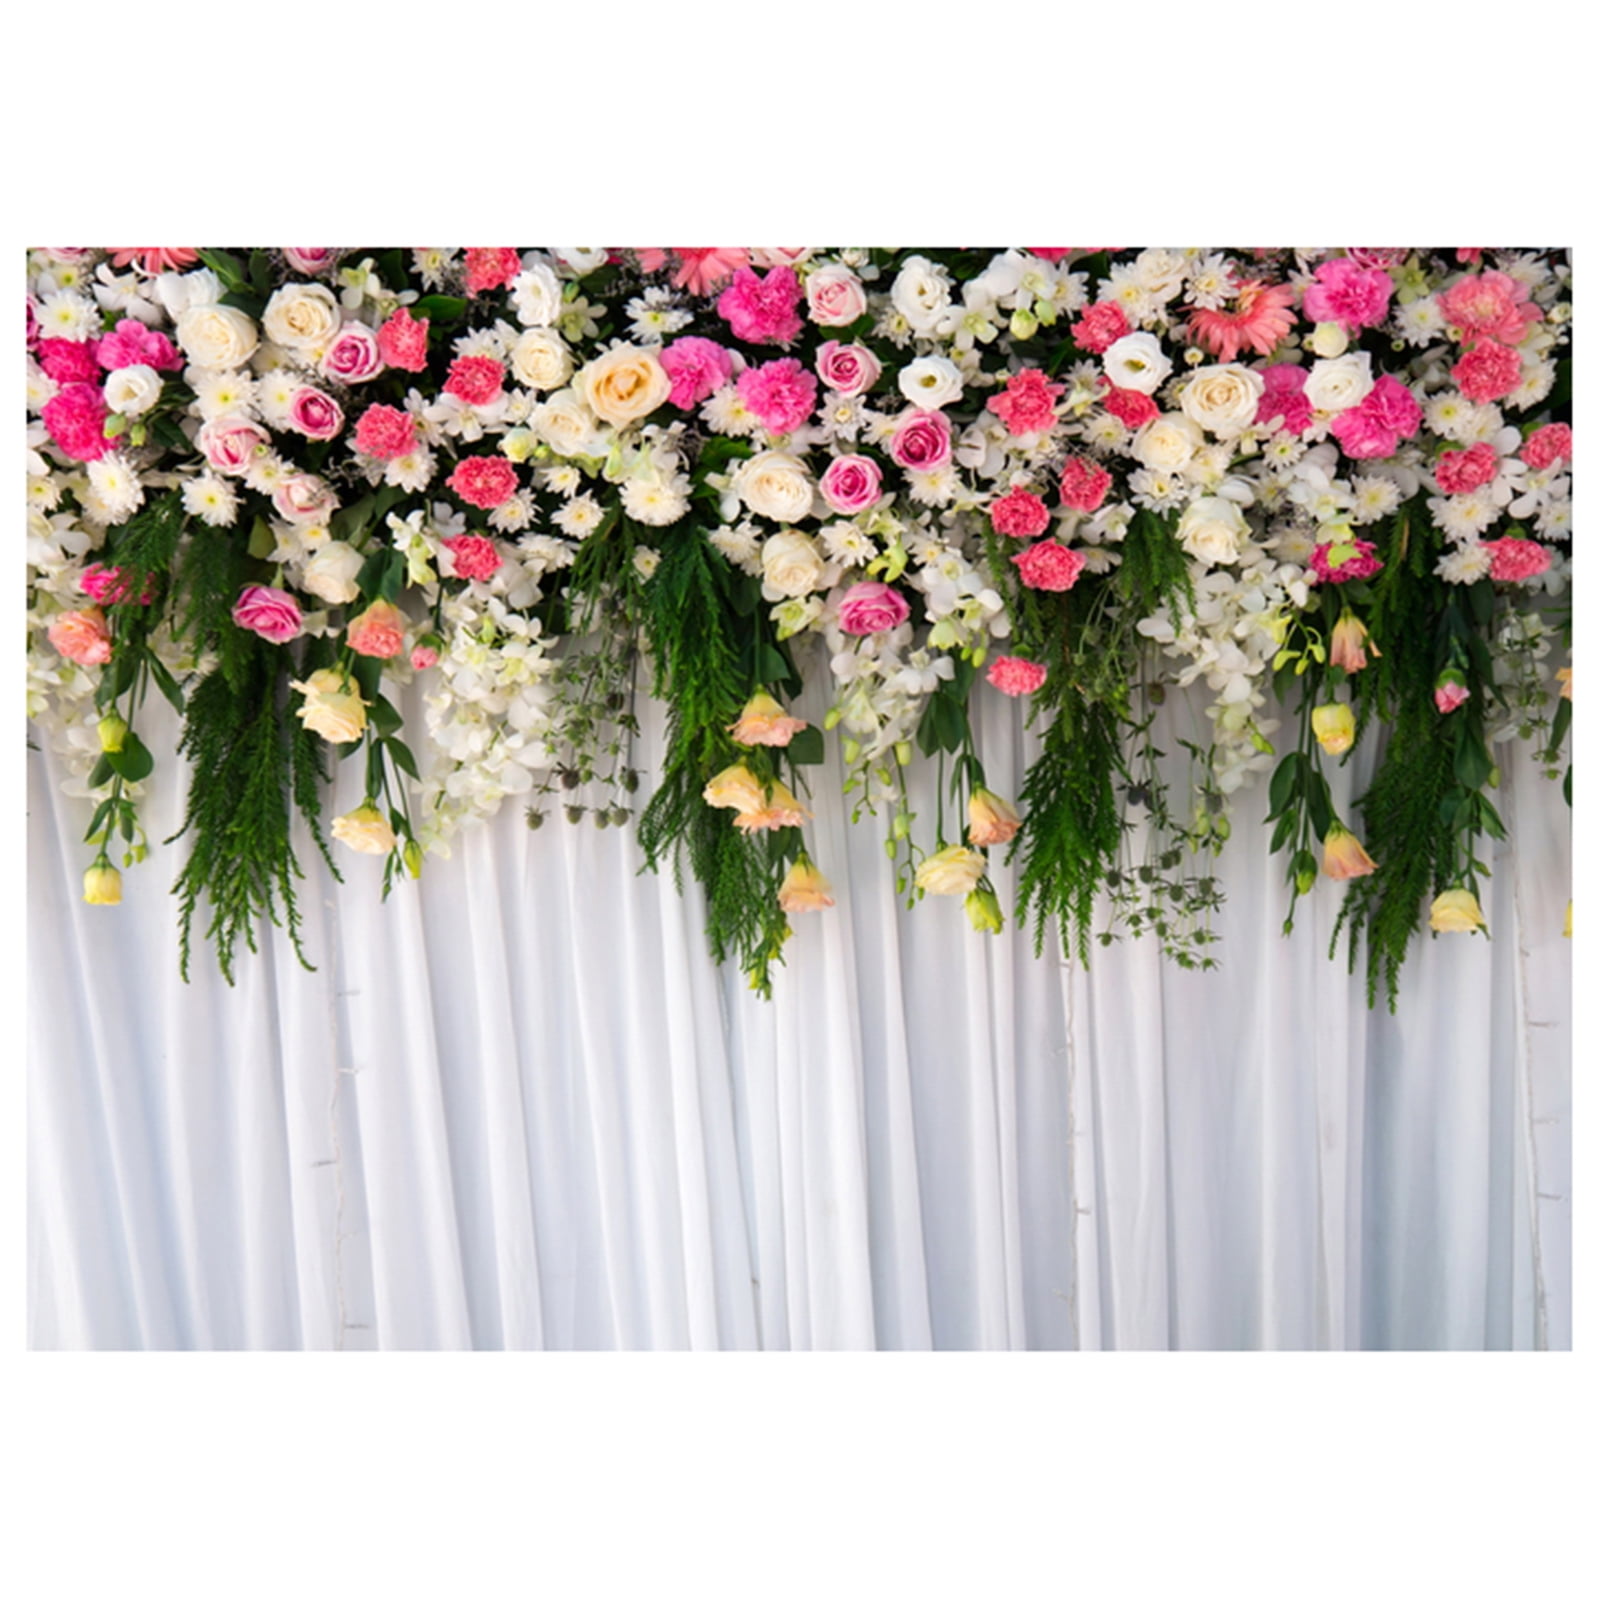 Details about   4Pcs Paper Flower Backdrop Wall Decor 3D DIY Wedding Venue Party Nursery Decor 